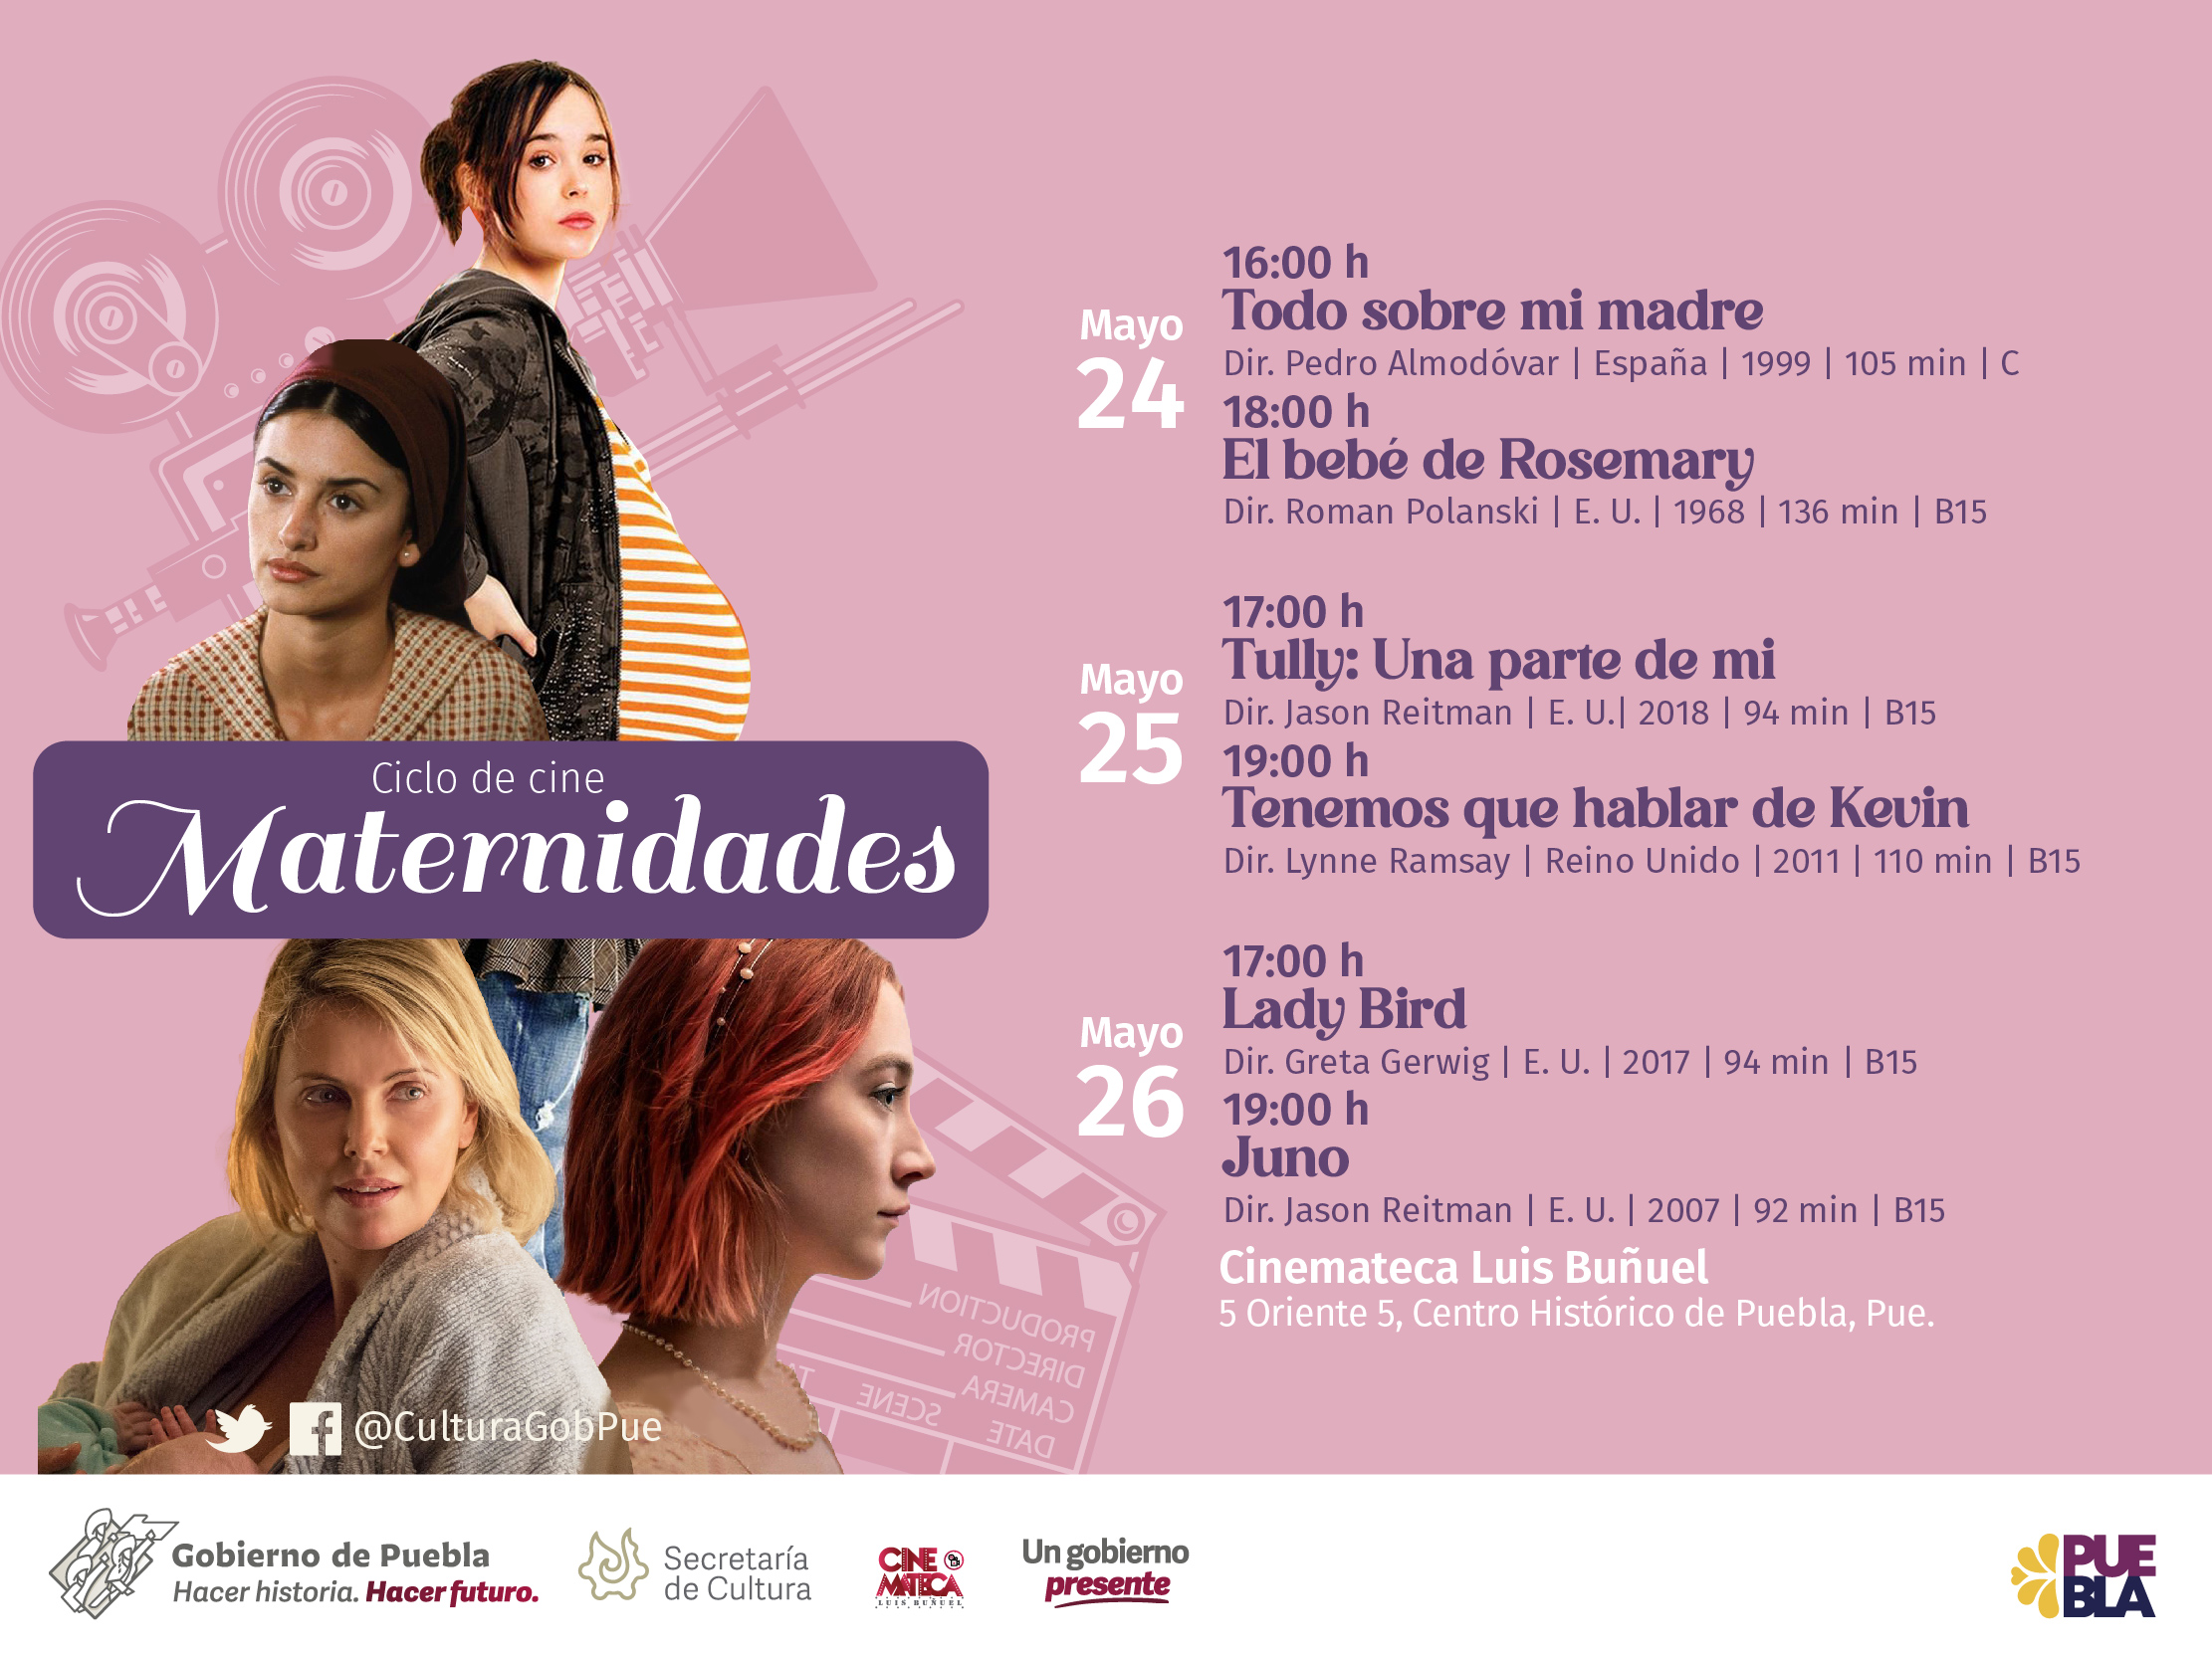 En Cinemateca Luis Buñuel, gobierno de Puebla exhibirá ciclo de cine Maternidades